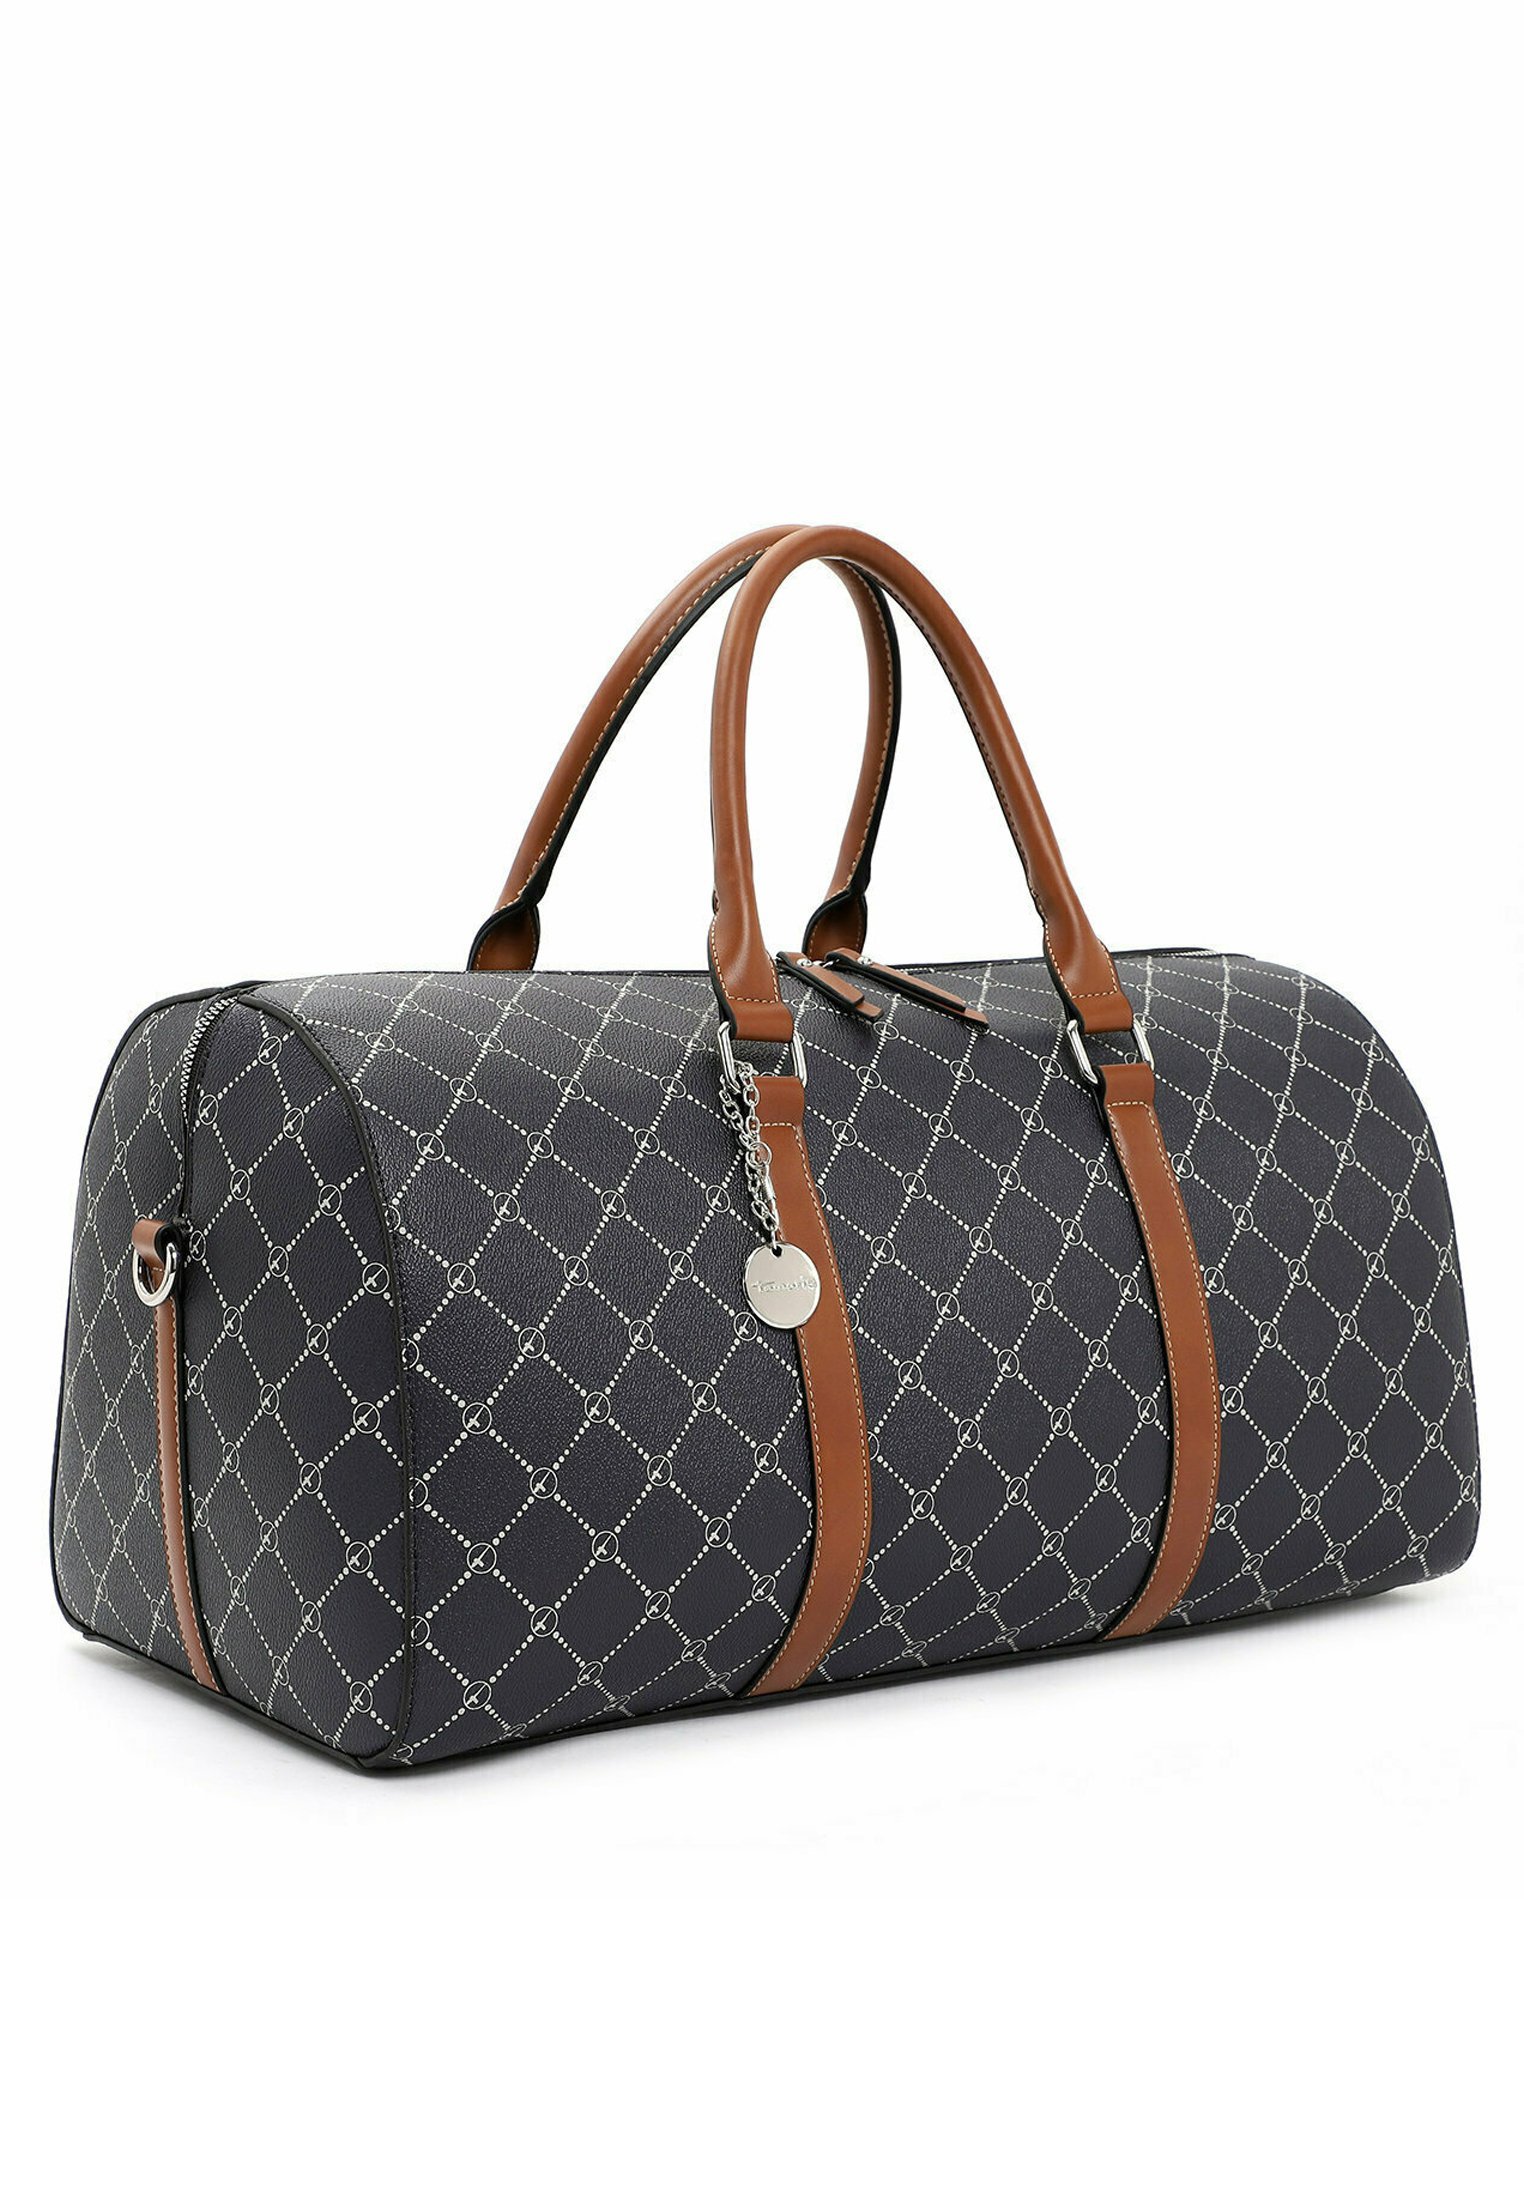 Zalando tiene la bolsa de viaje de fin de semana que recuerda mucho a la más icónica de Louis Vuitton